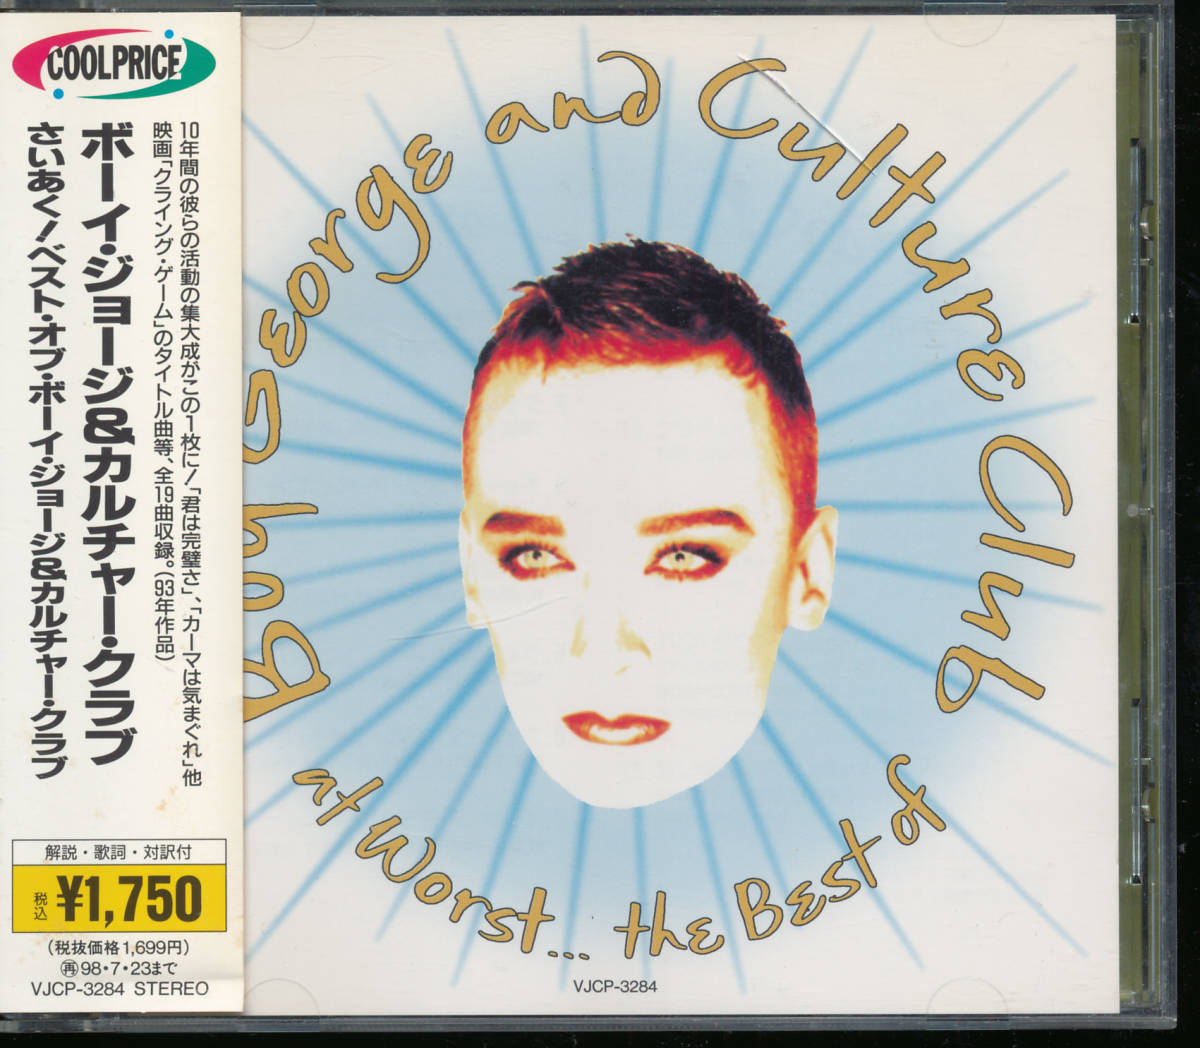  культура * Club *....! / лучший *ob* Boy * George & культура * Club The Best of Boy George and Culture Club* записано в Японии 